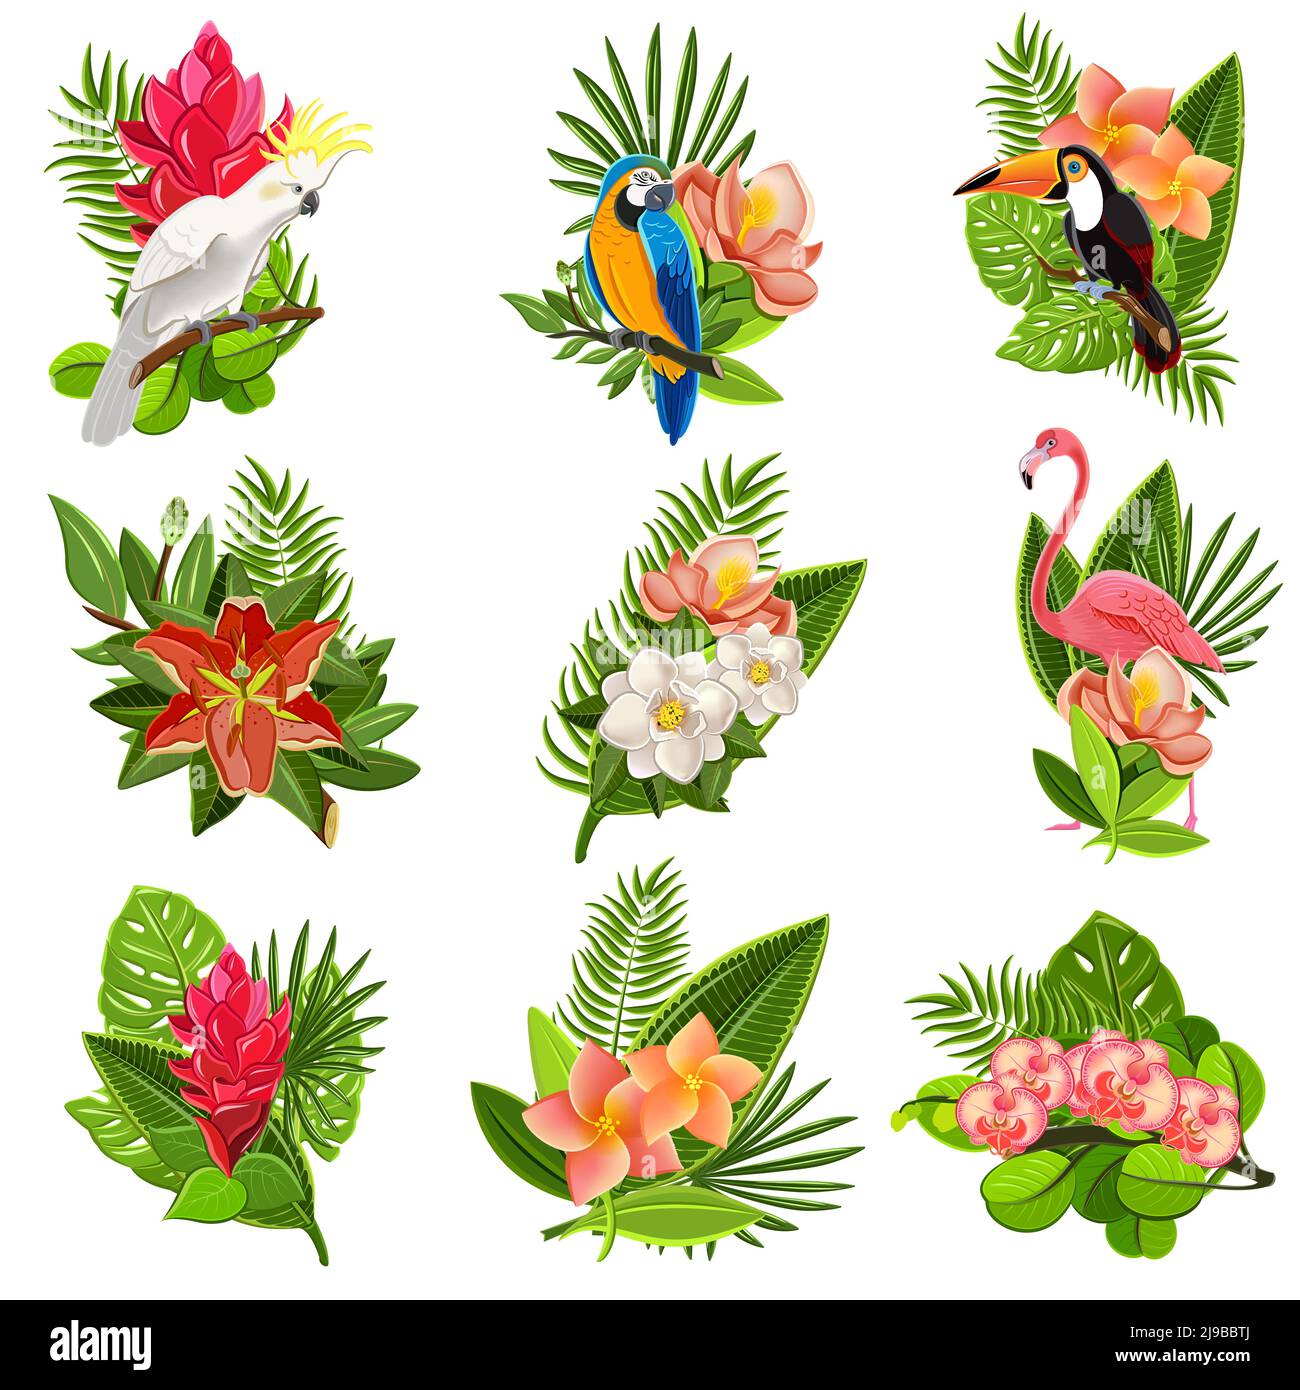 Exotische tropische Blumen und Vögel Ikonen Kollektion mit schönen opulent Grün Laub Anordnungen abstrakt isoliert Vektor-Illustration Stock Vektor